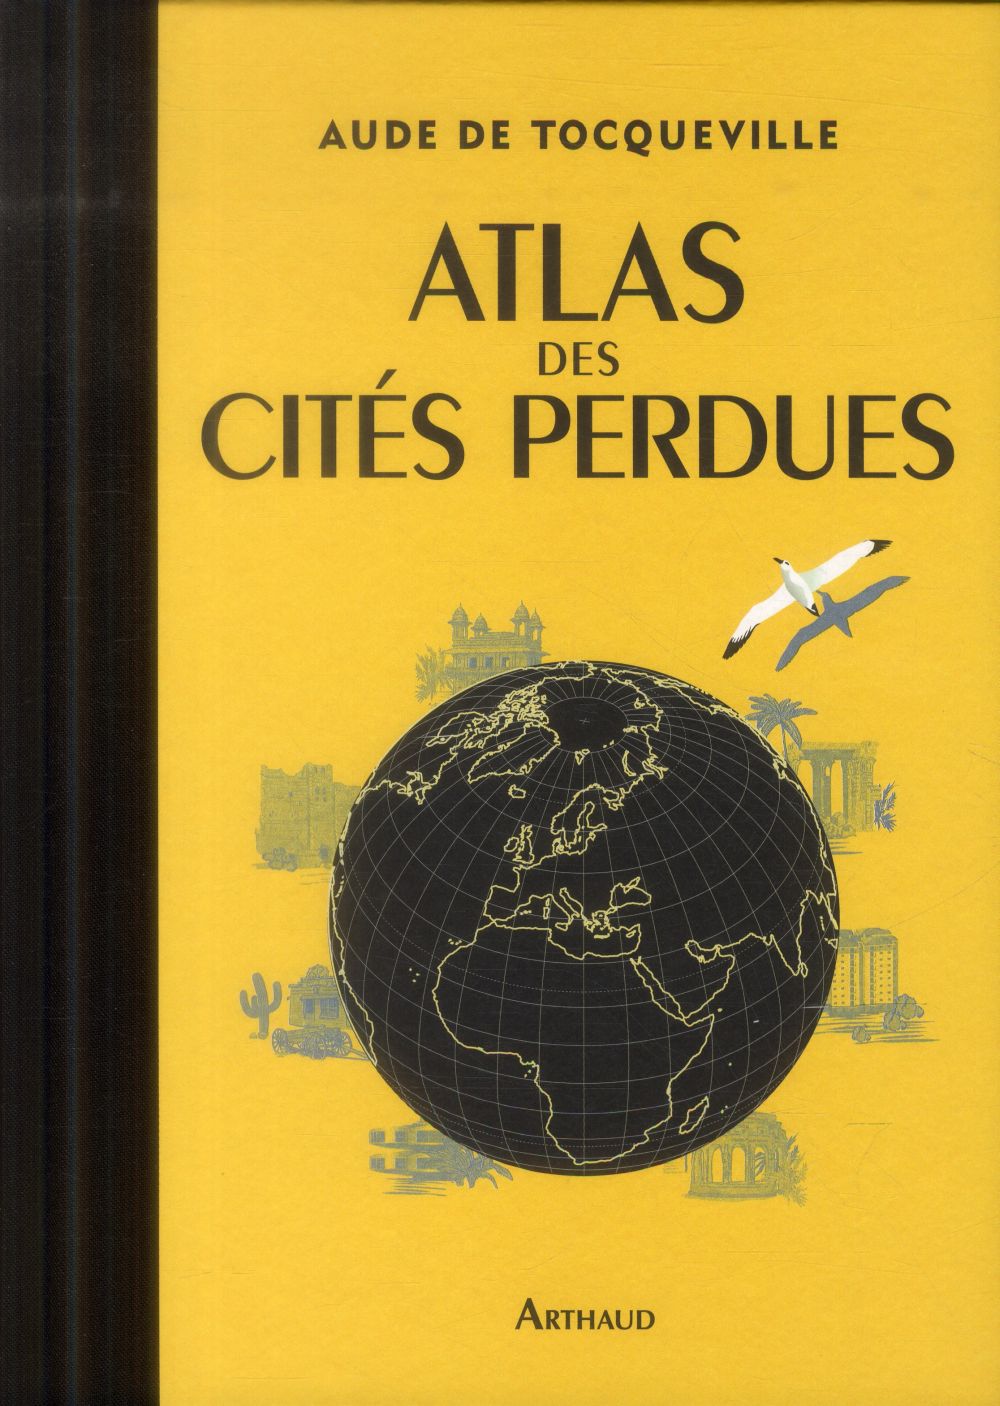 ATLAS DES CITES PERDUES